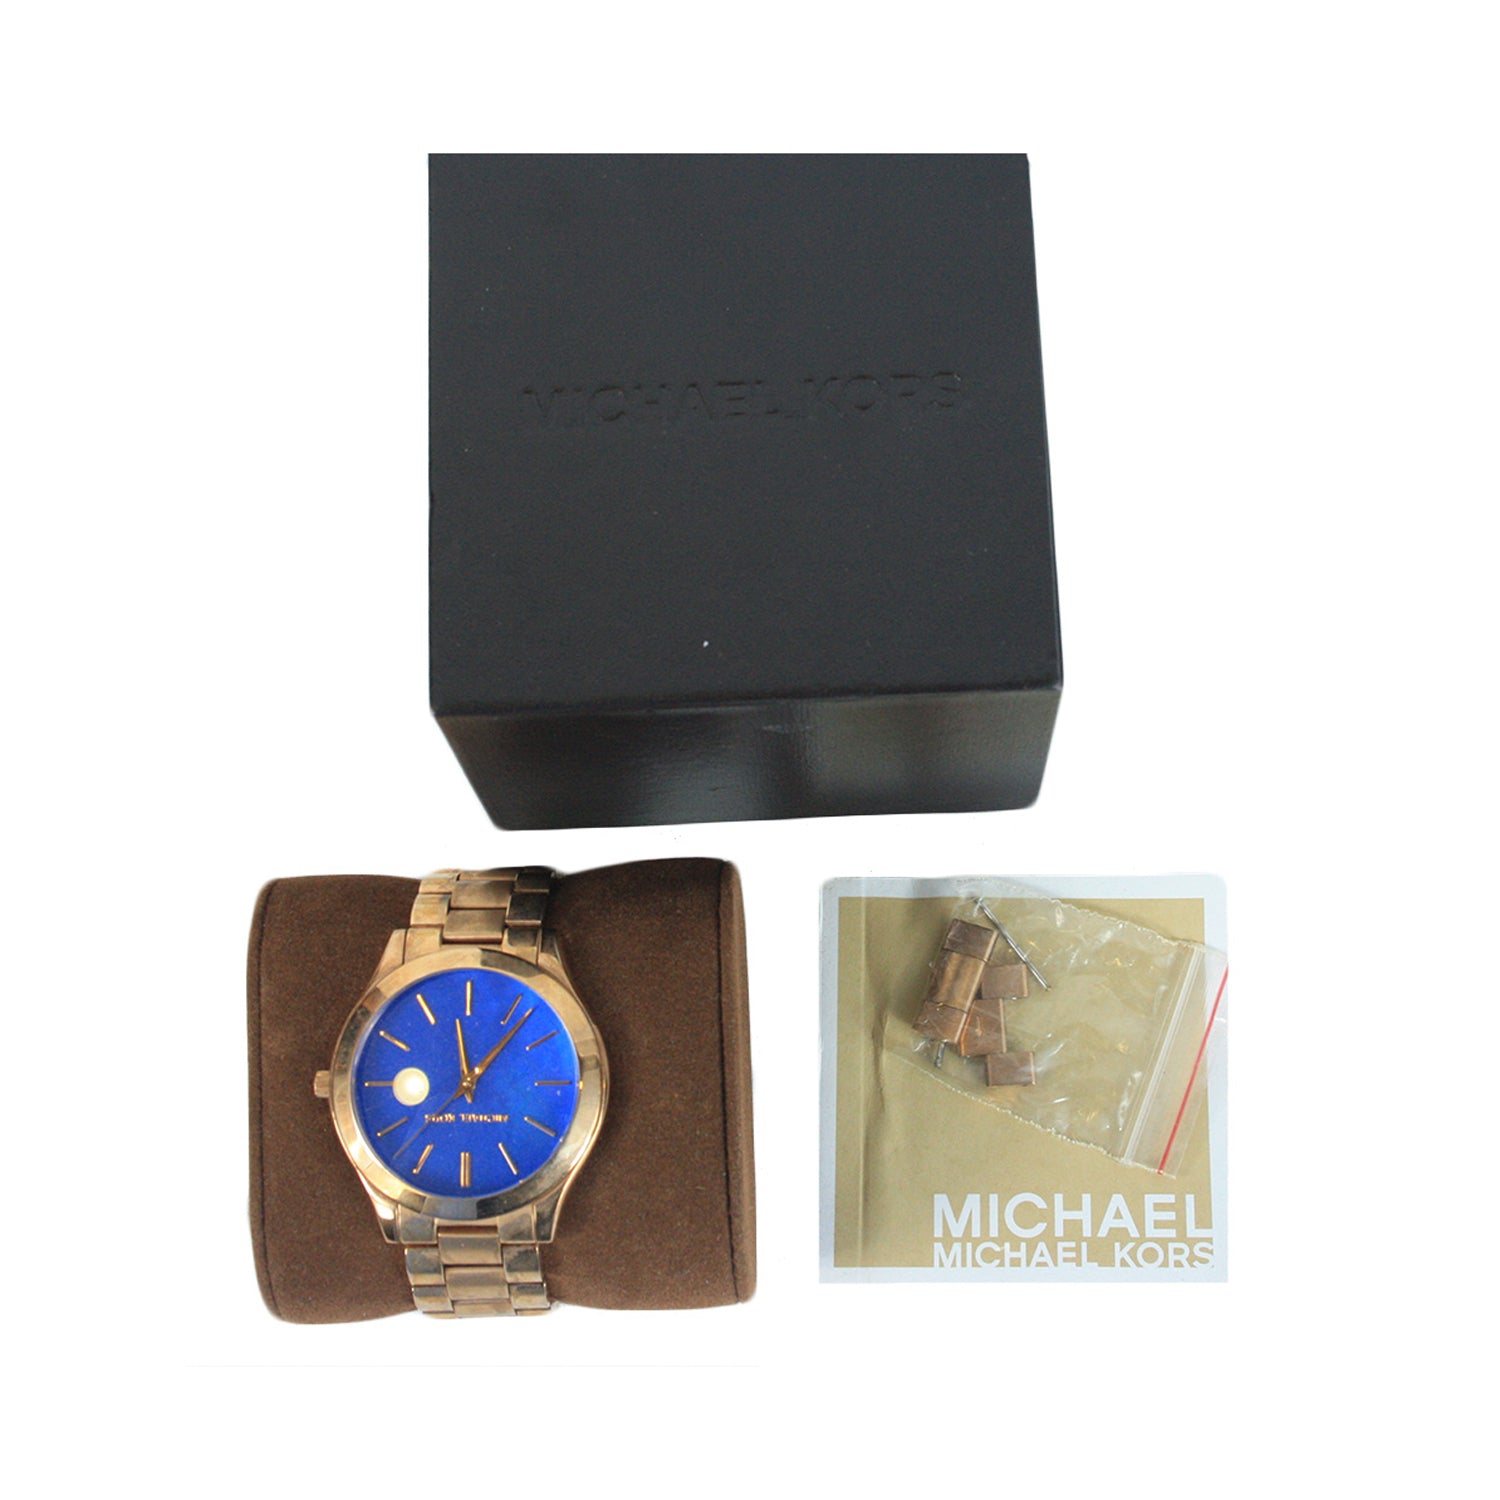 Michael Kors Golden watch